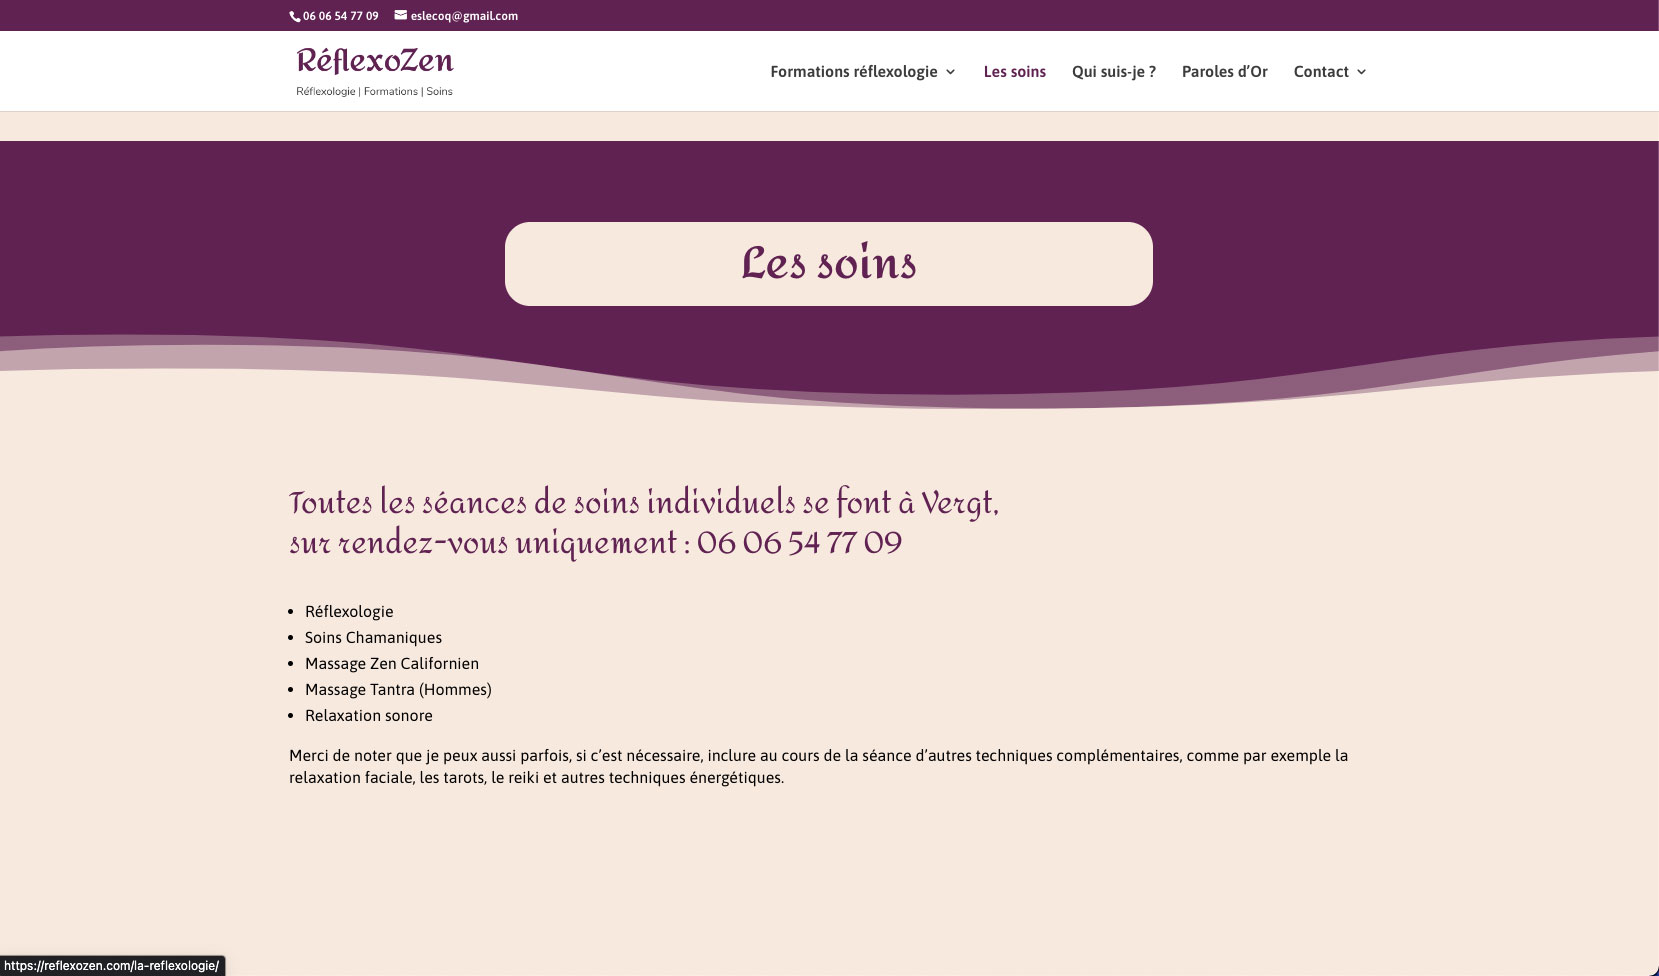 RéflexoZen site web formation et soins en réflexologie - Adékoi communication Périgueux